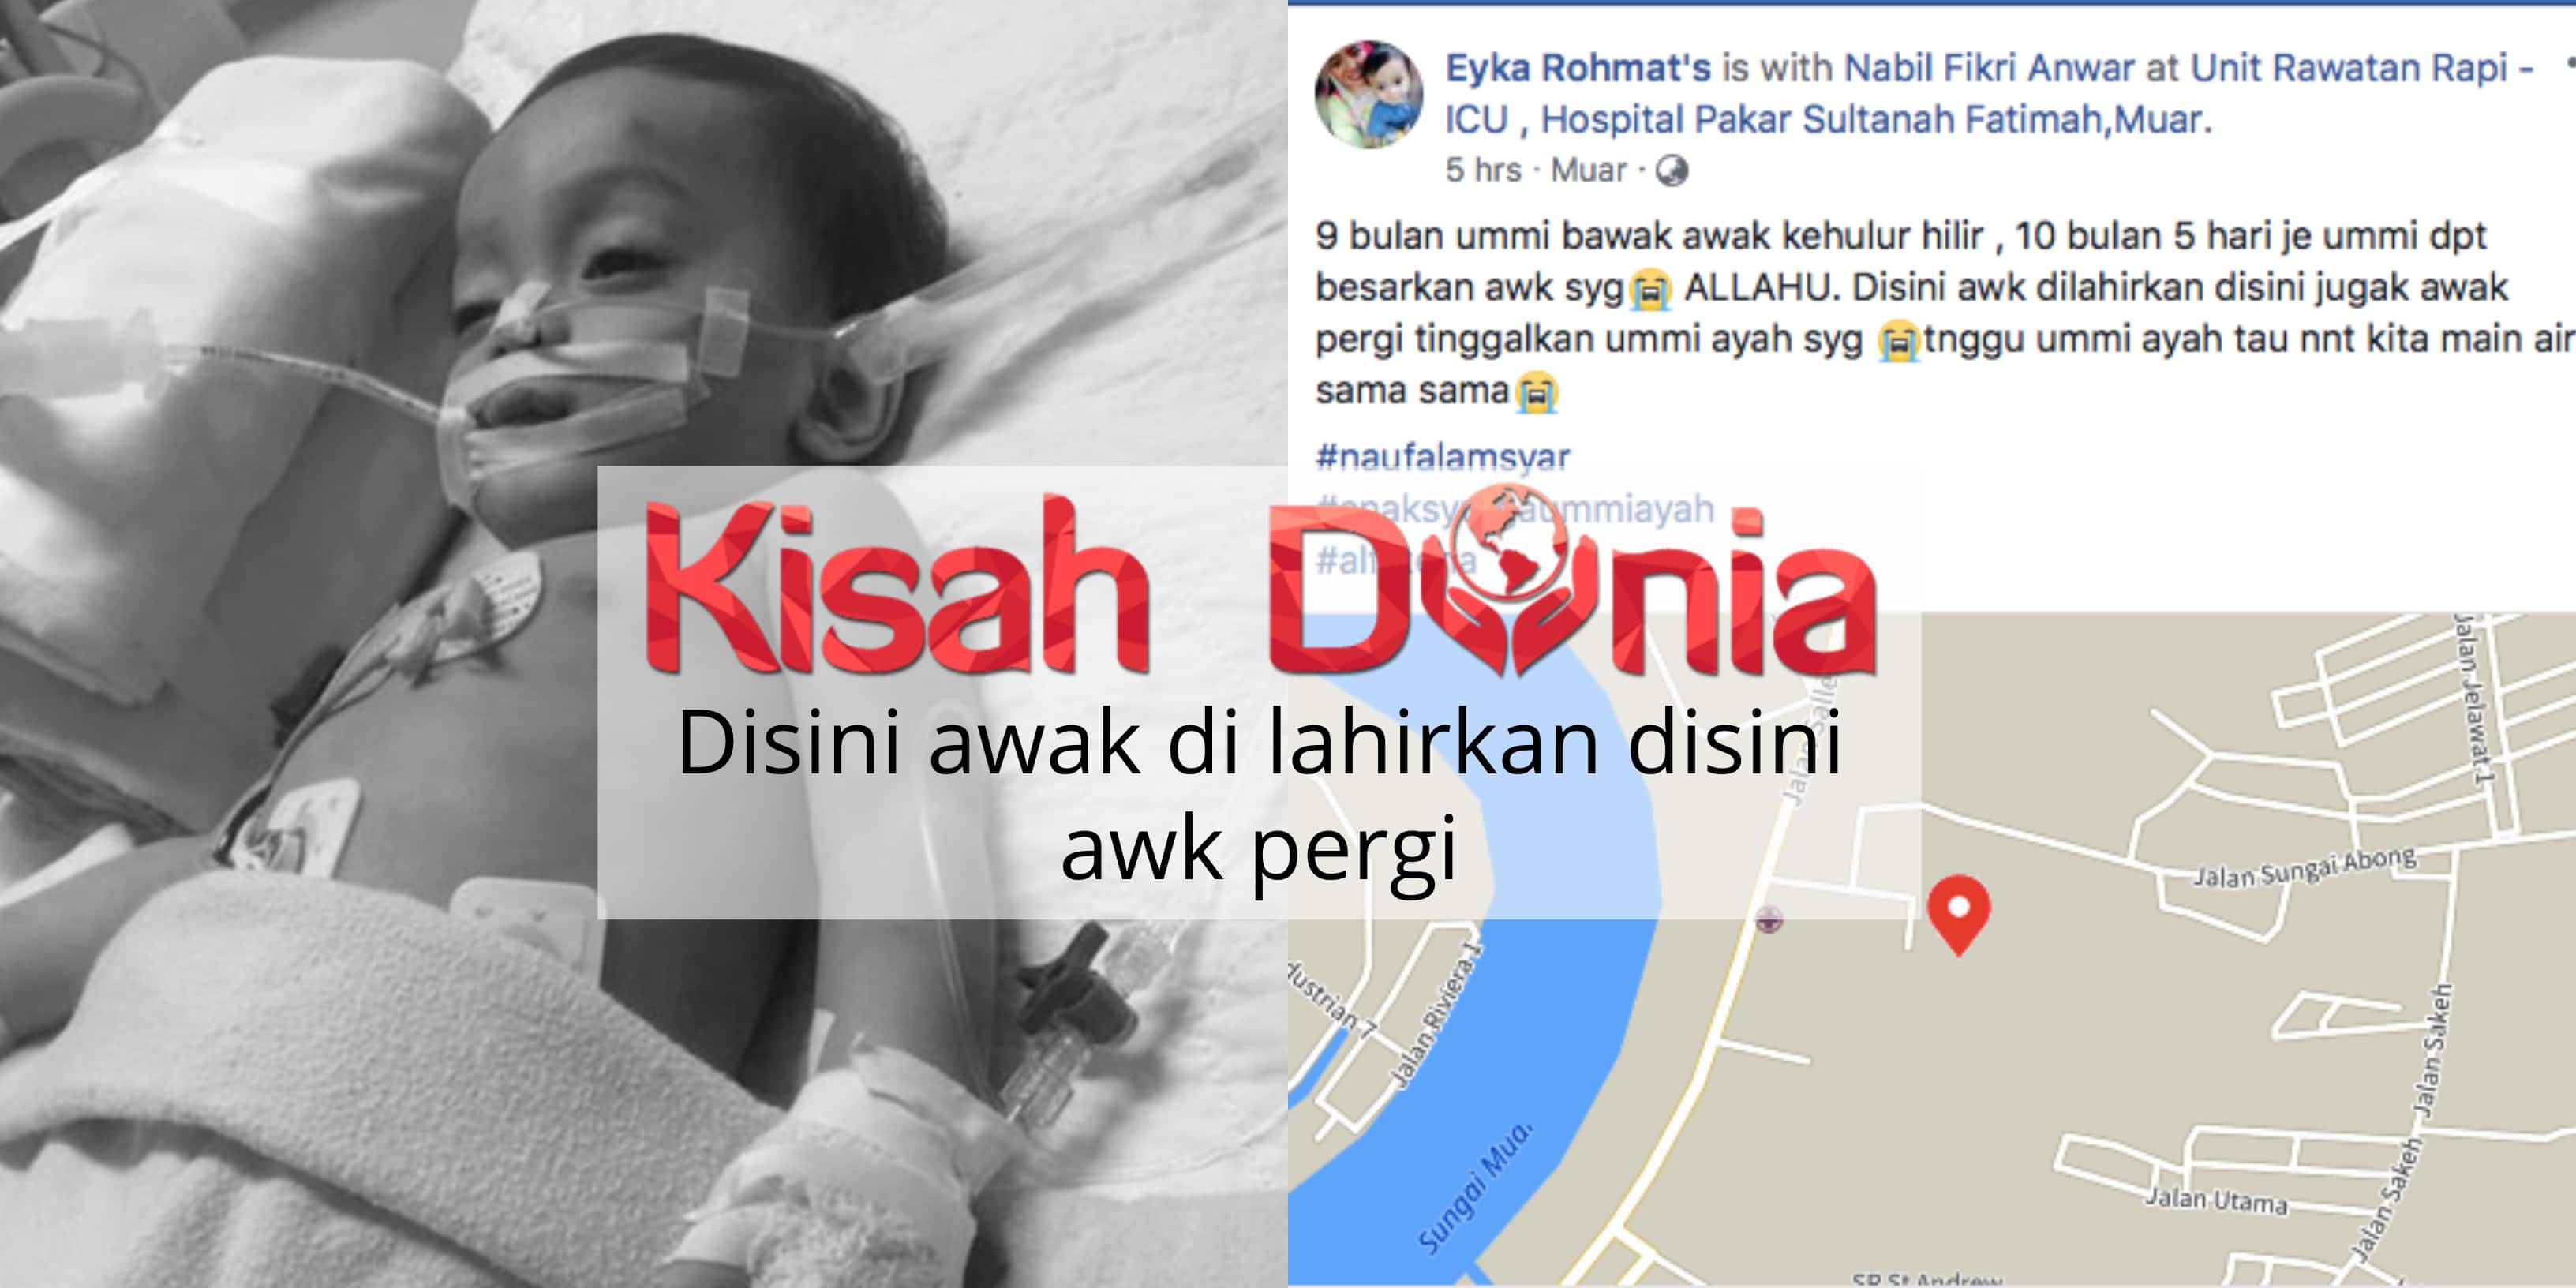 VIDEO) Akaun Fake Janji Beg LV, Dato' Vida Setuju Hadiahkan Beg LV Tetapi  Bersyarat - Siakap Keli News